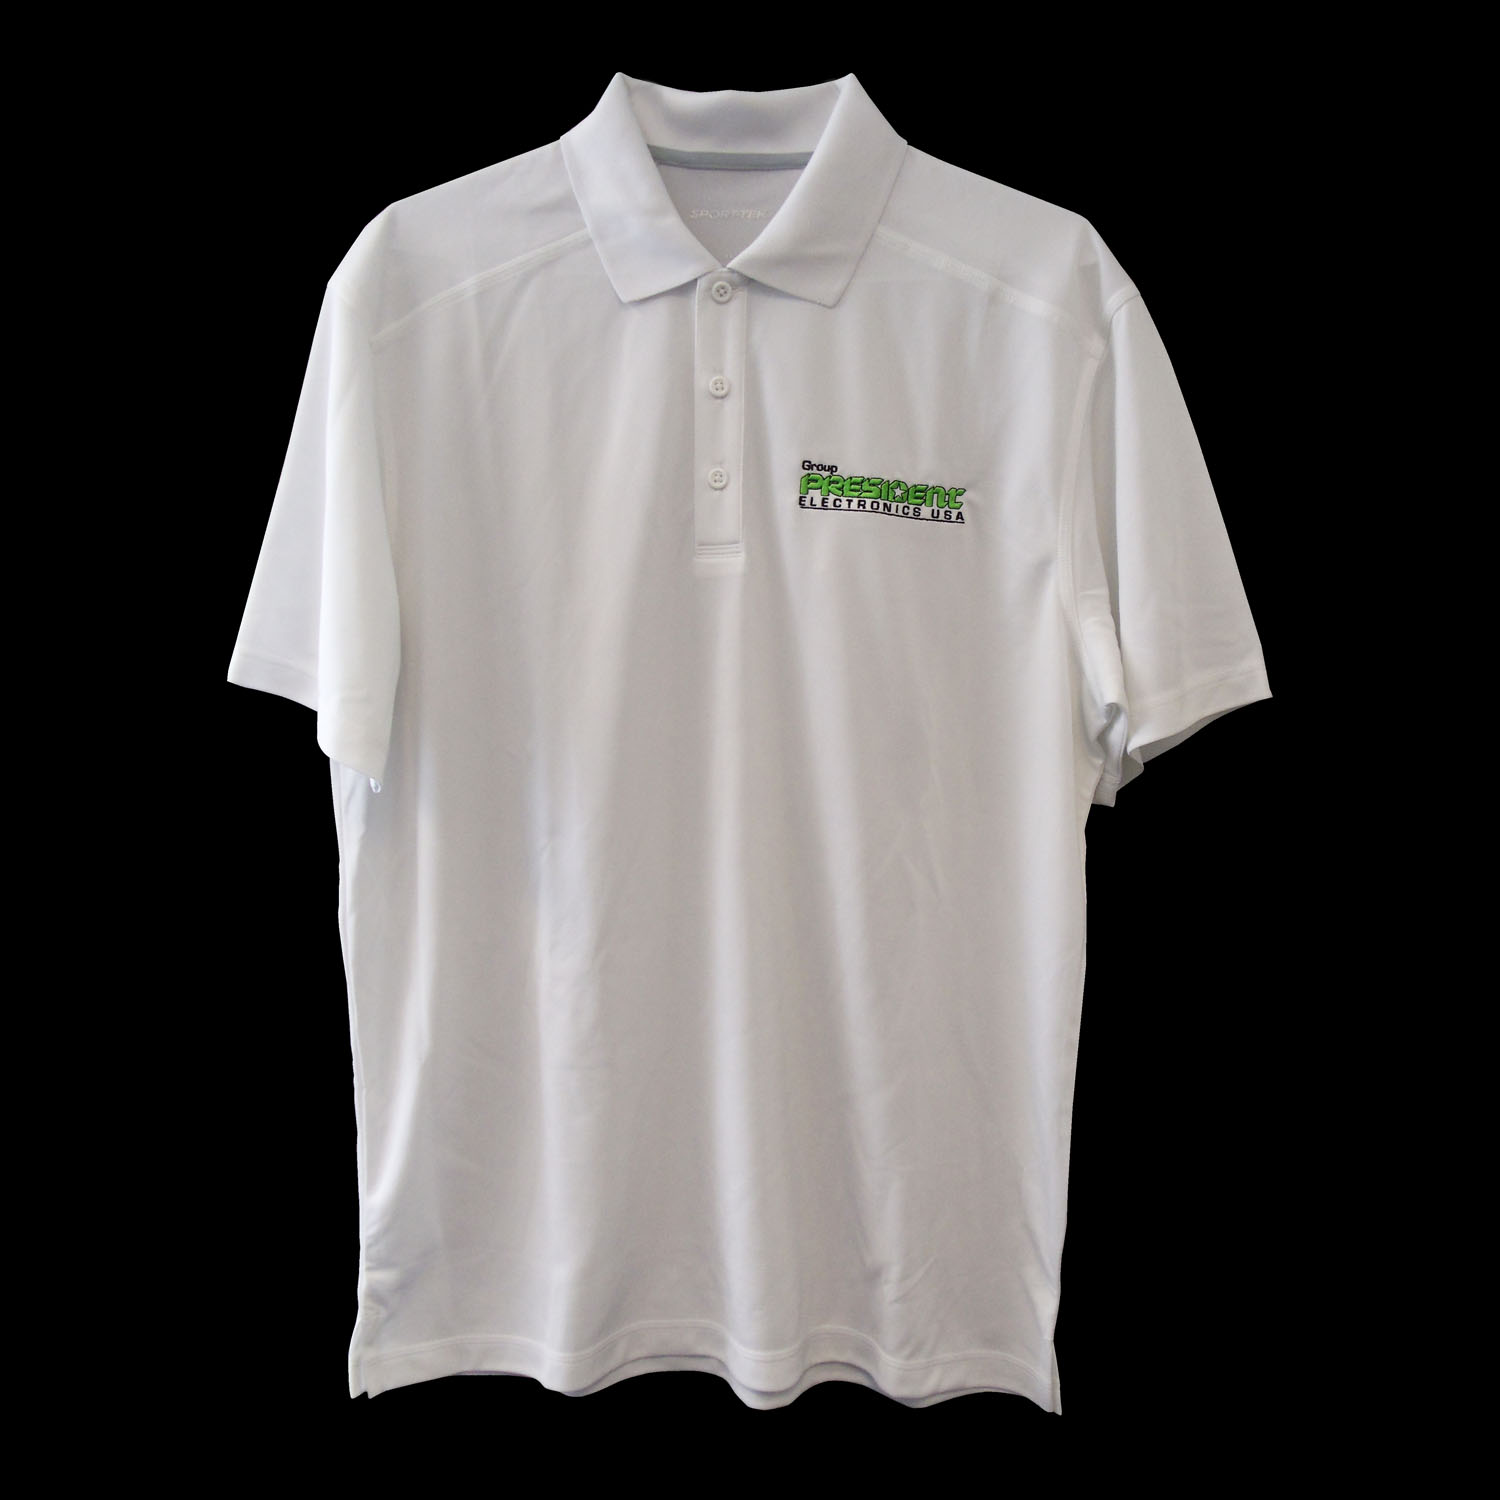 President Electronics Logo White Polo Shirt - Size Xtra-Large